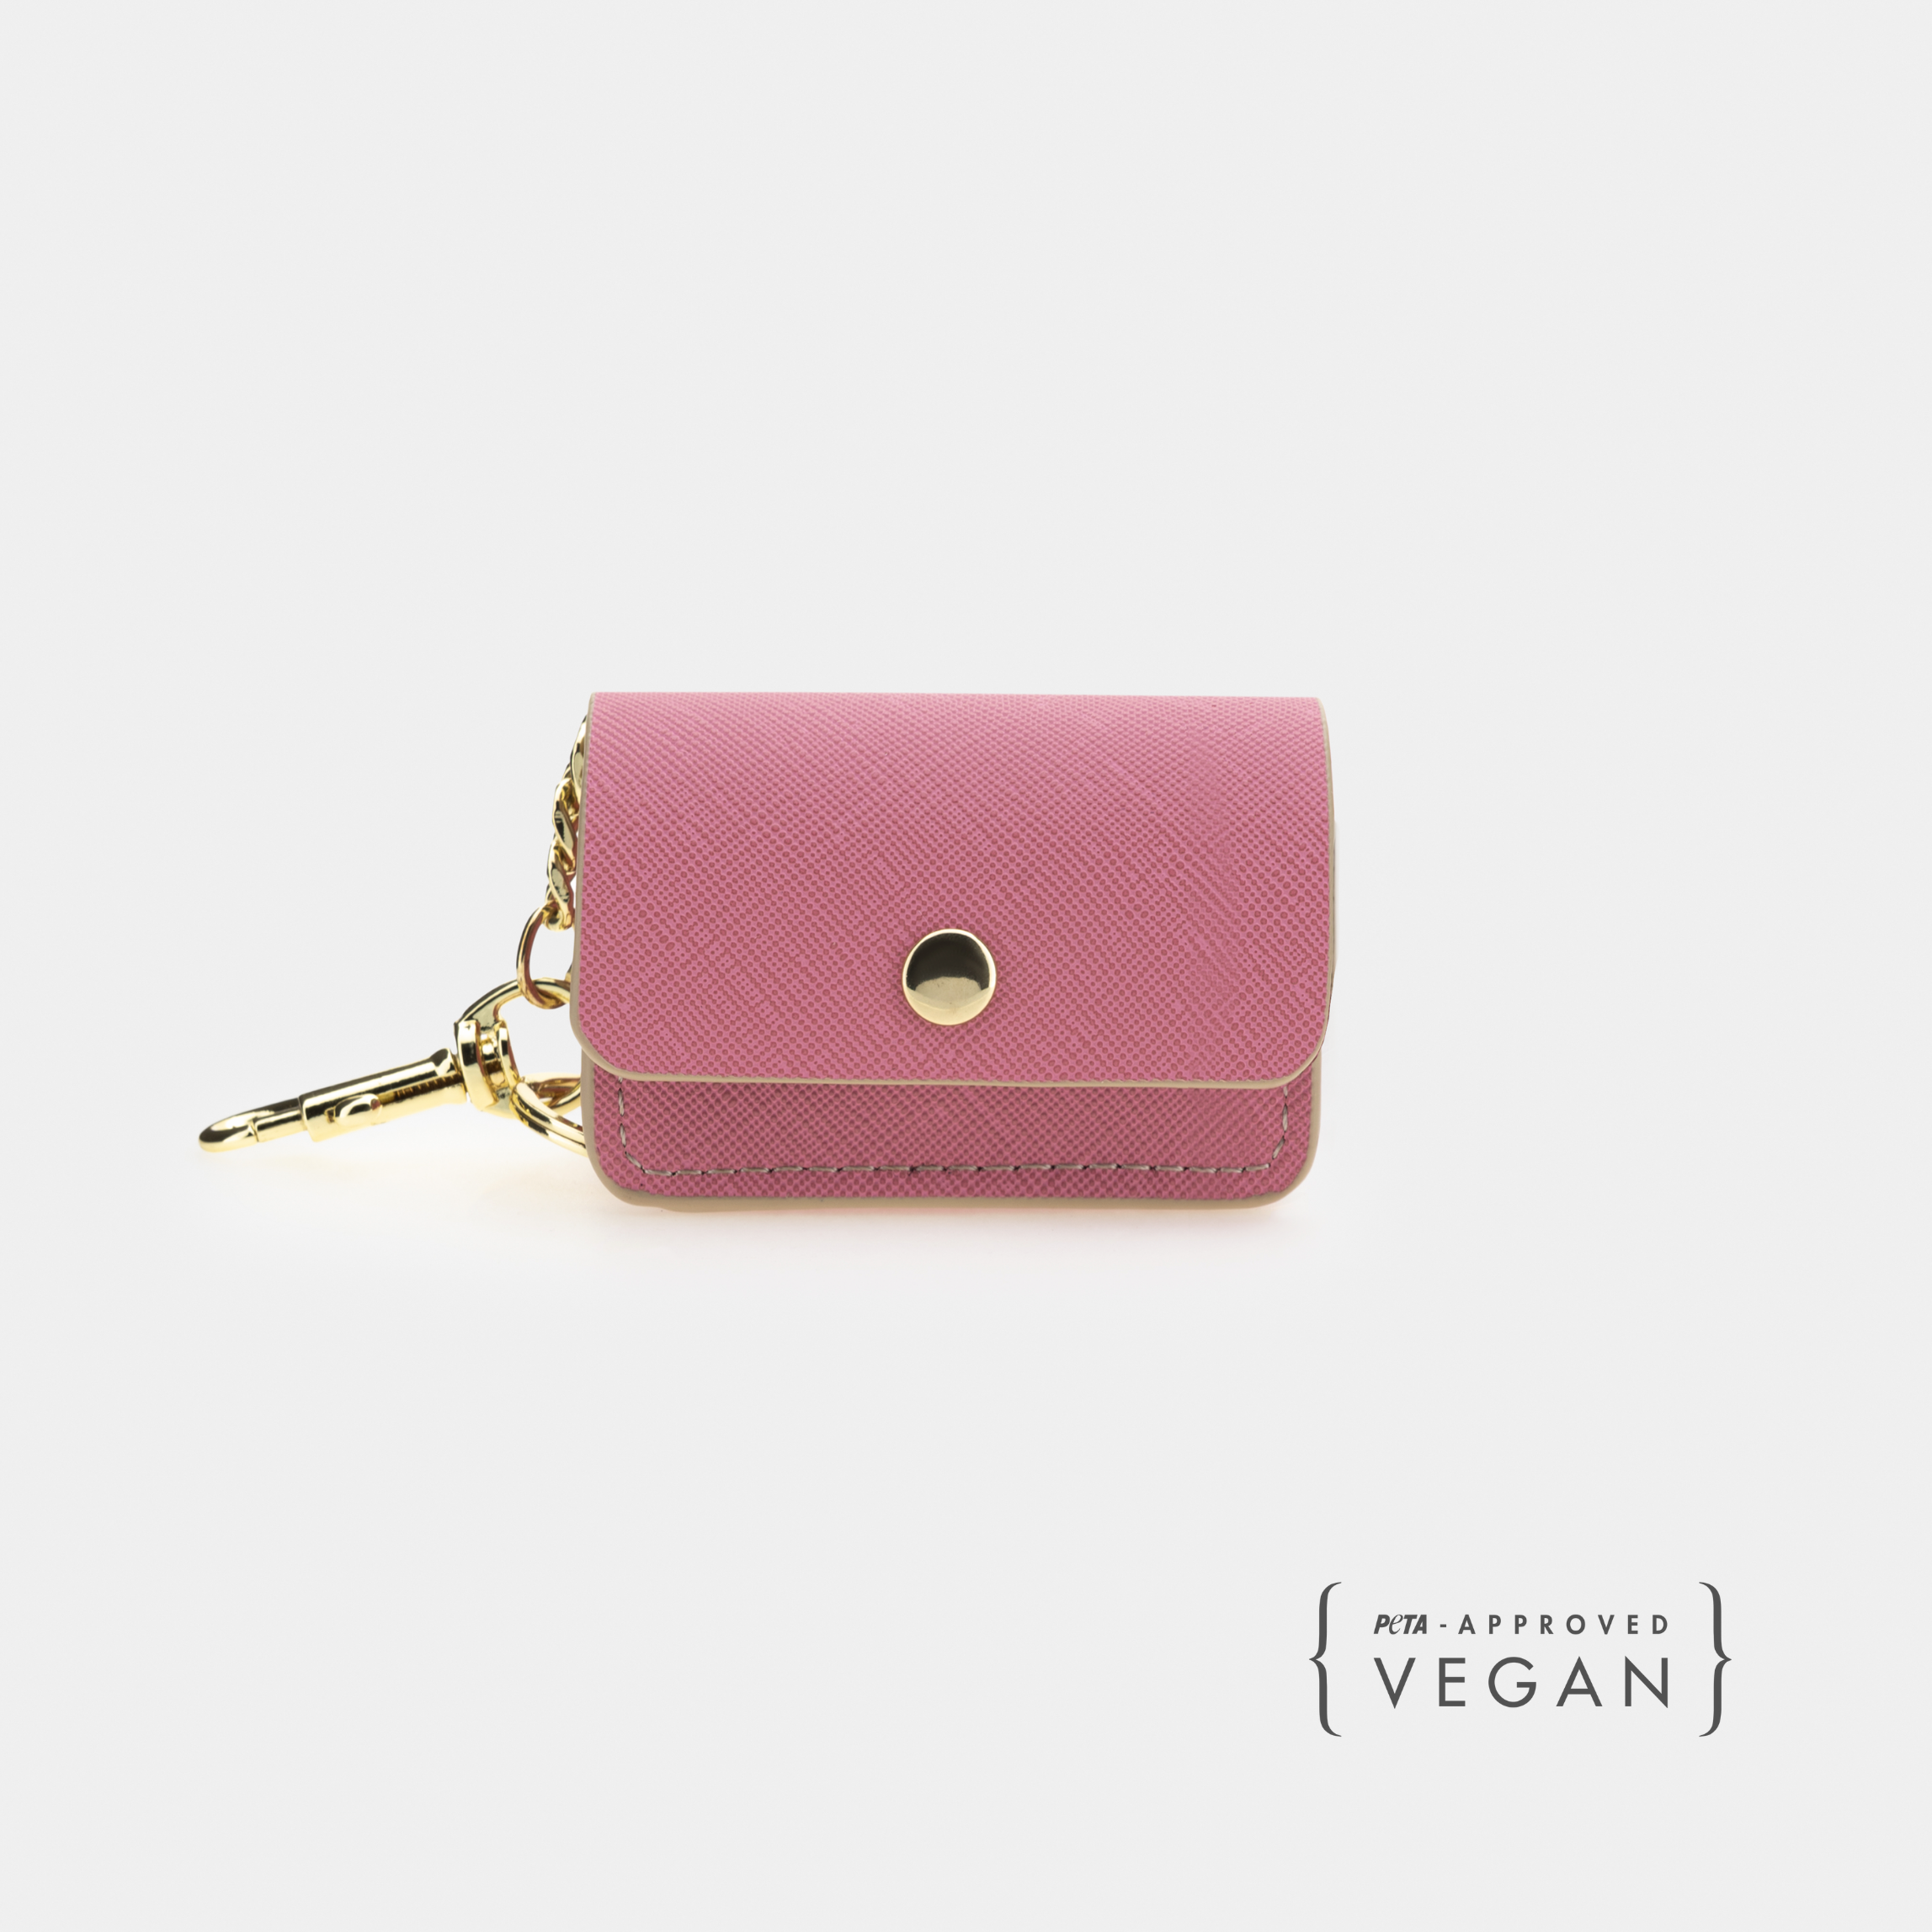 Waste Bag Holder Pink - Vegan Leather - Bag Dispenser